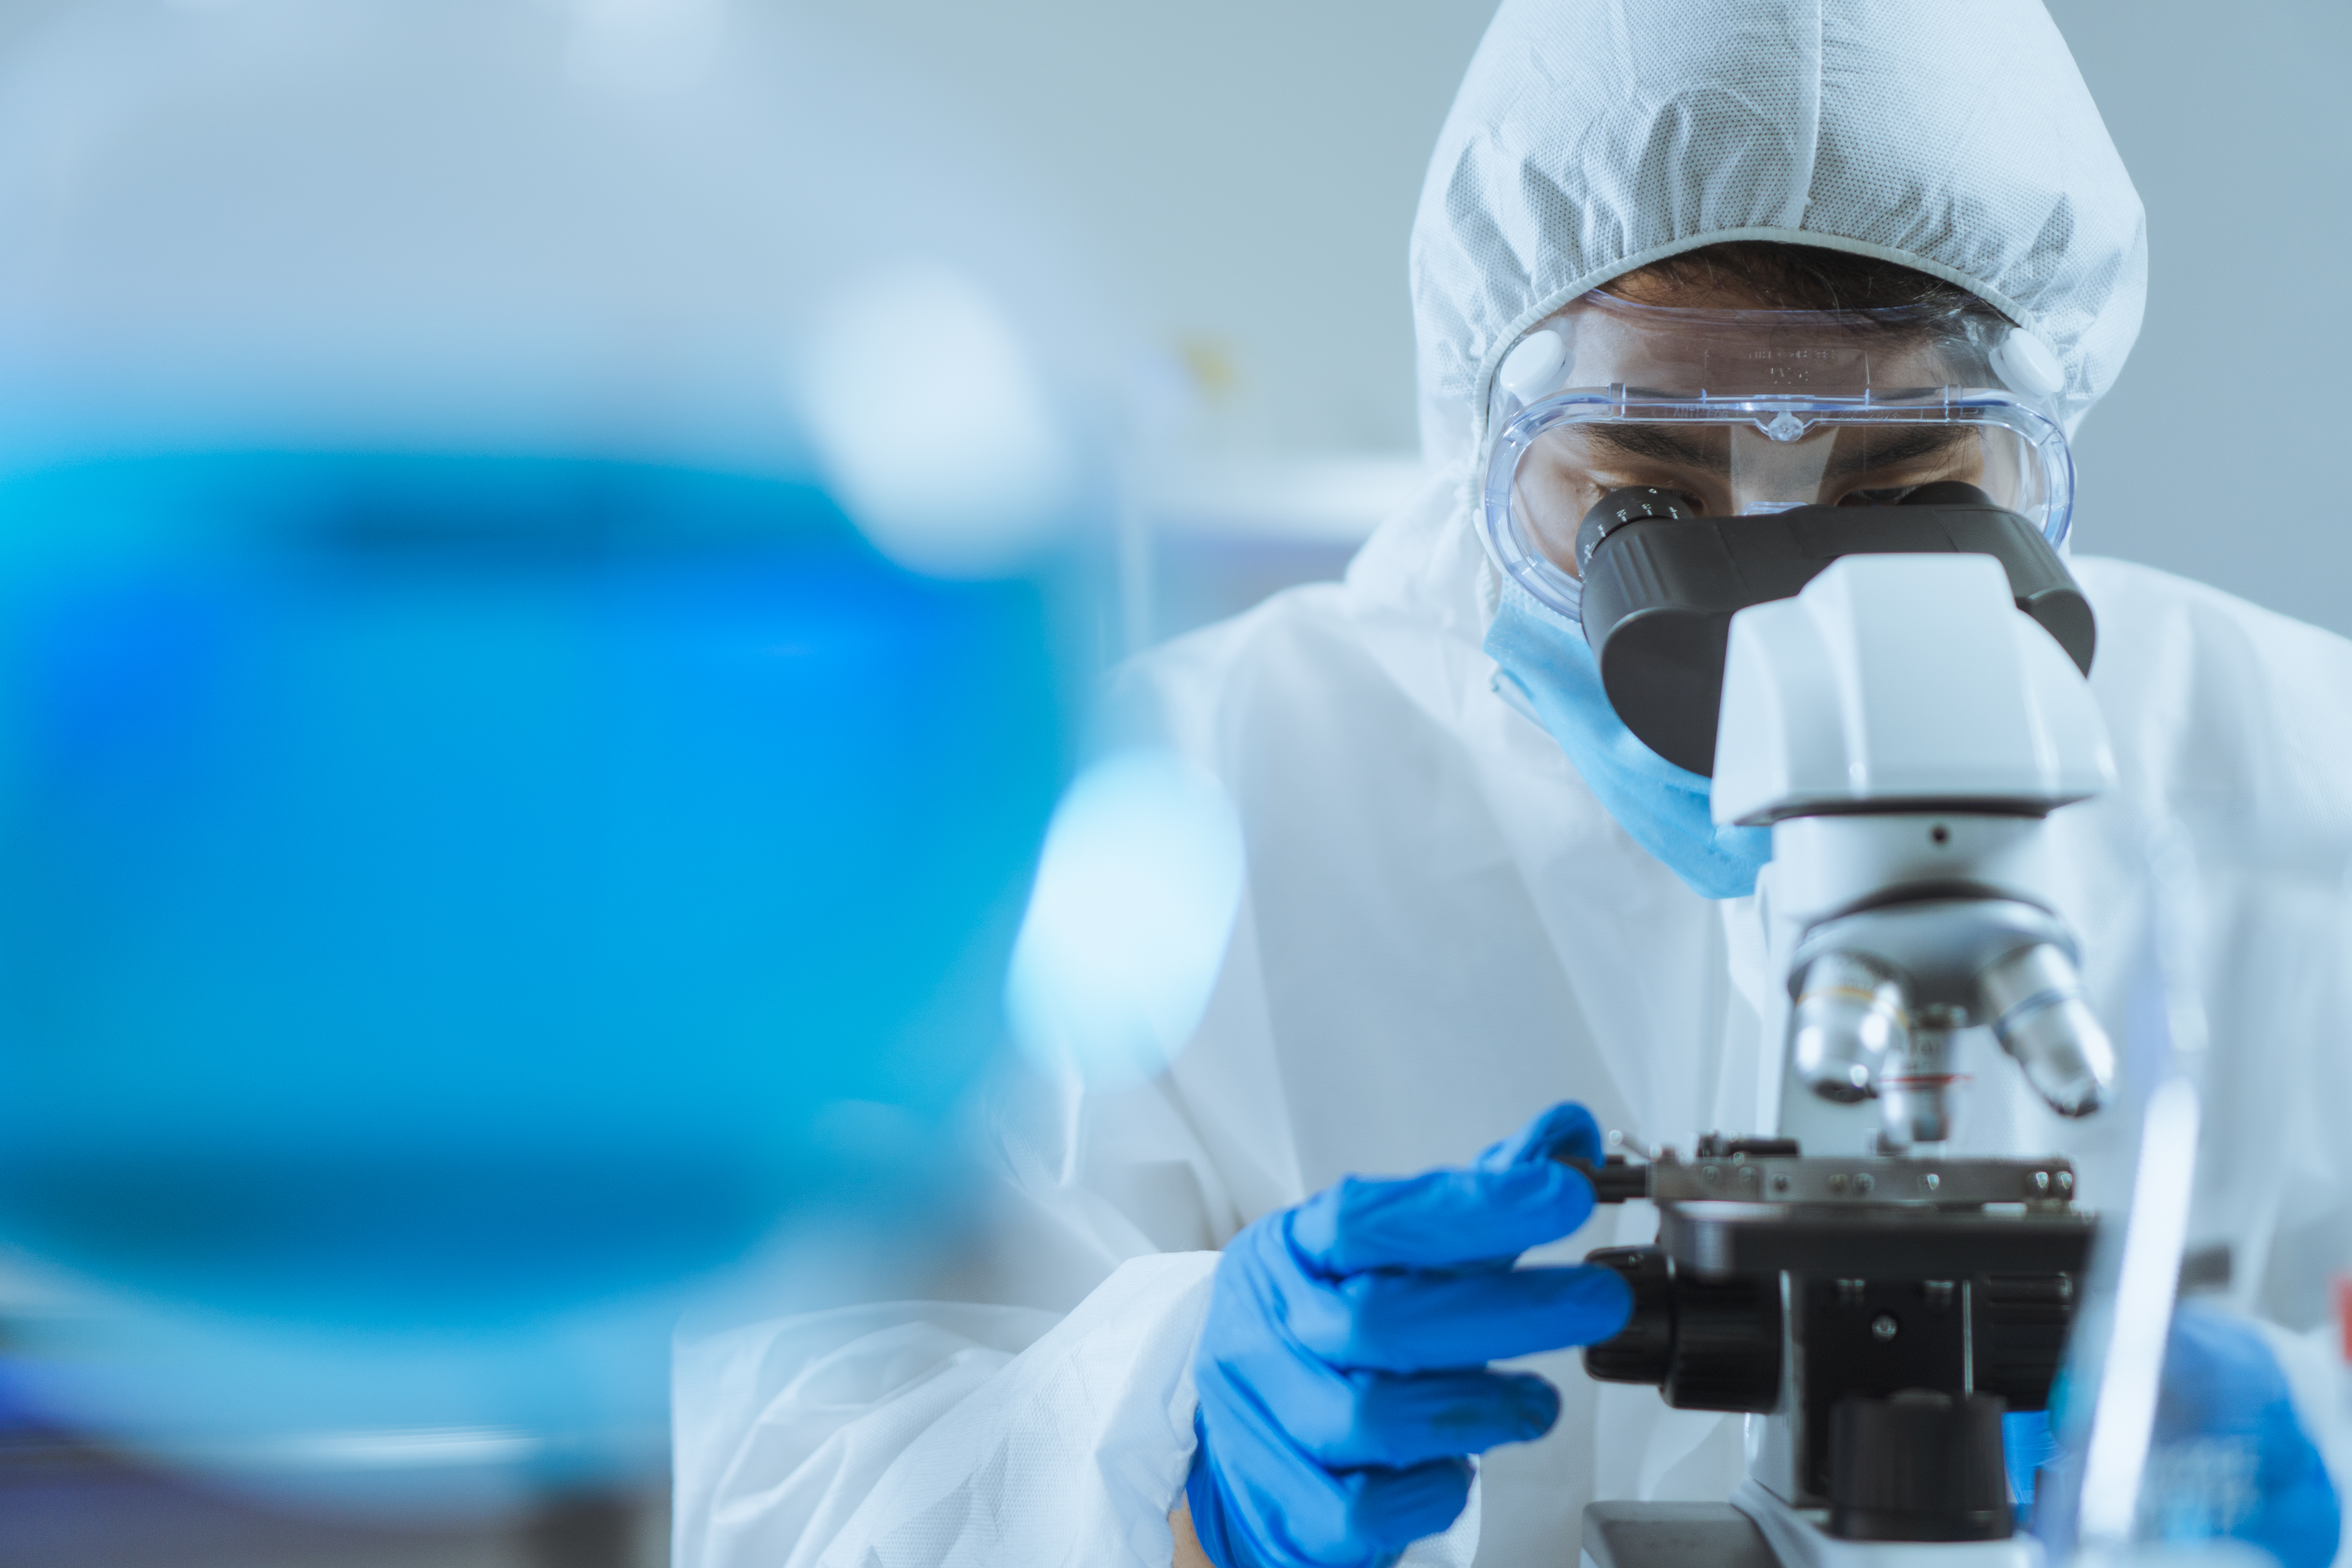 Un jeune homme asiatique, beau scientifique, ajuste la mise au point et utilise un microscope pour observer une cellule biochimique en laboratoire.